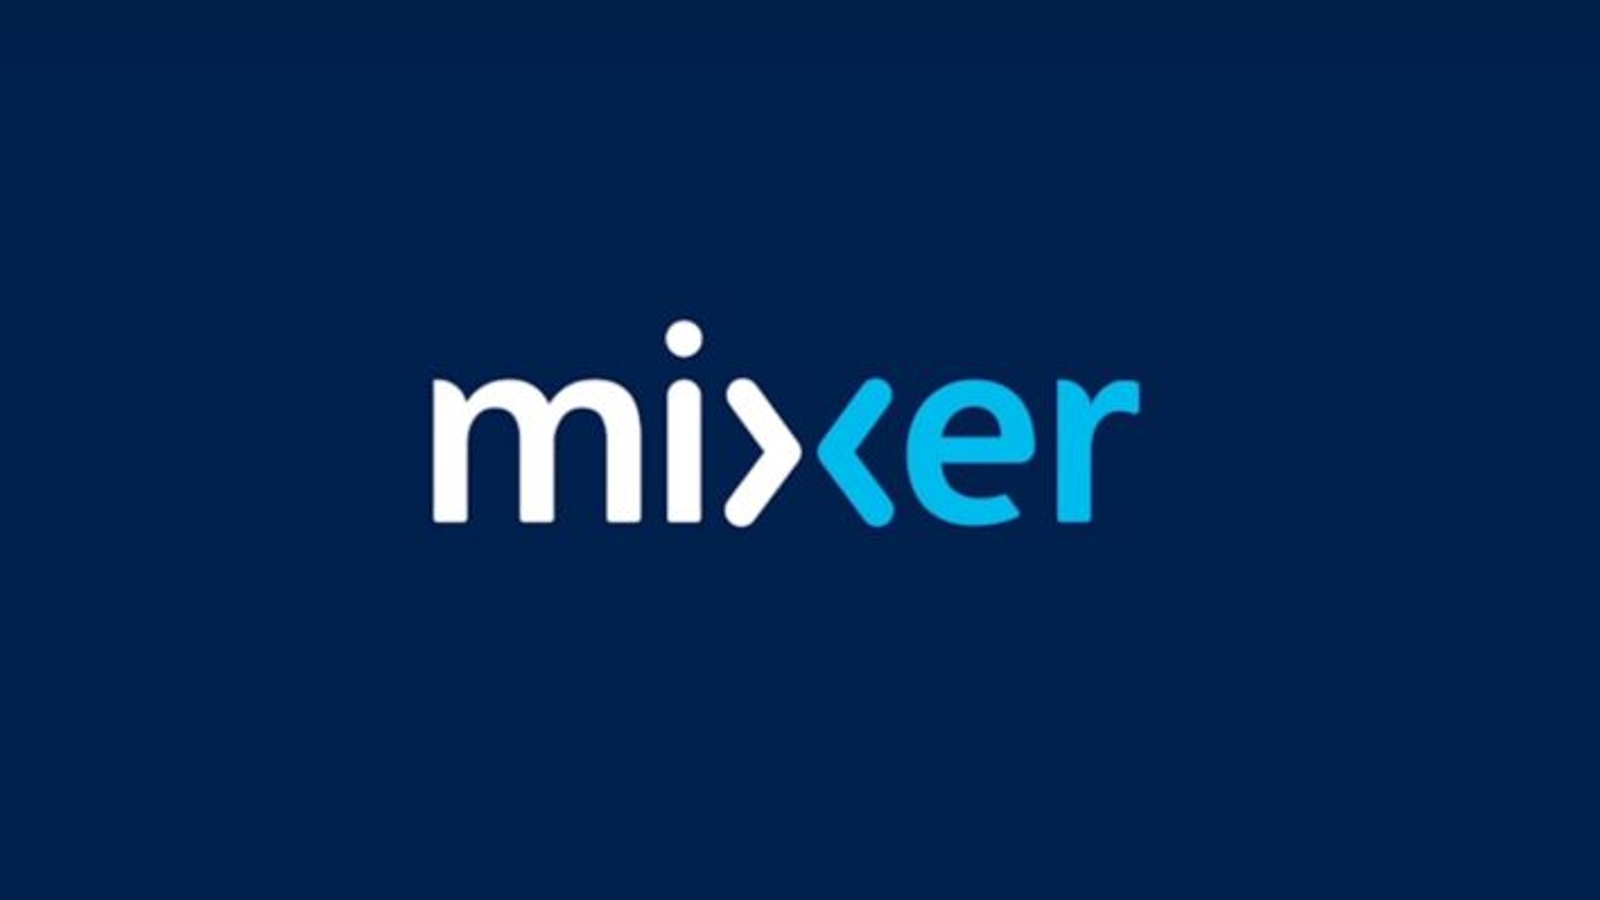 Ninja was paid between and $30m for Mixer exclusivity deal | GamesIndustry.biz